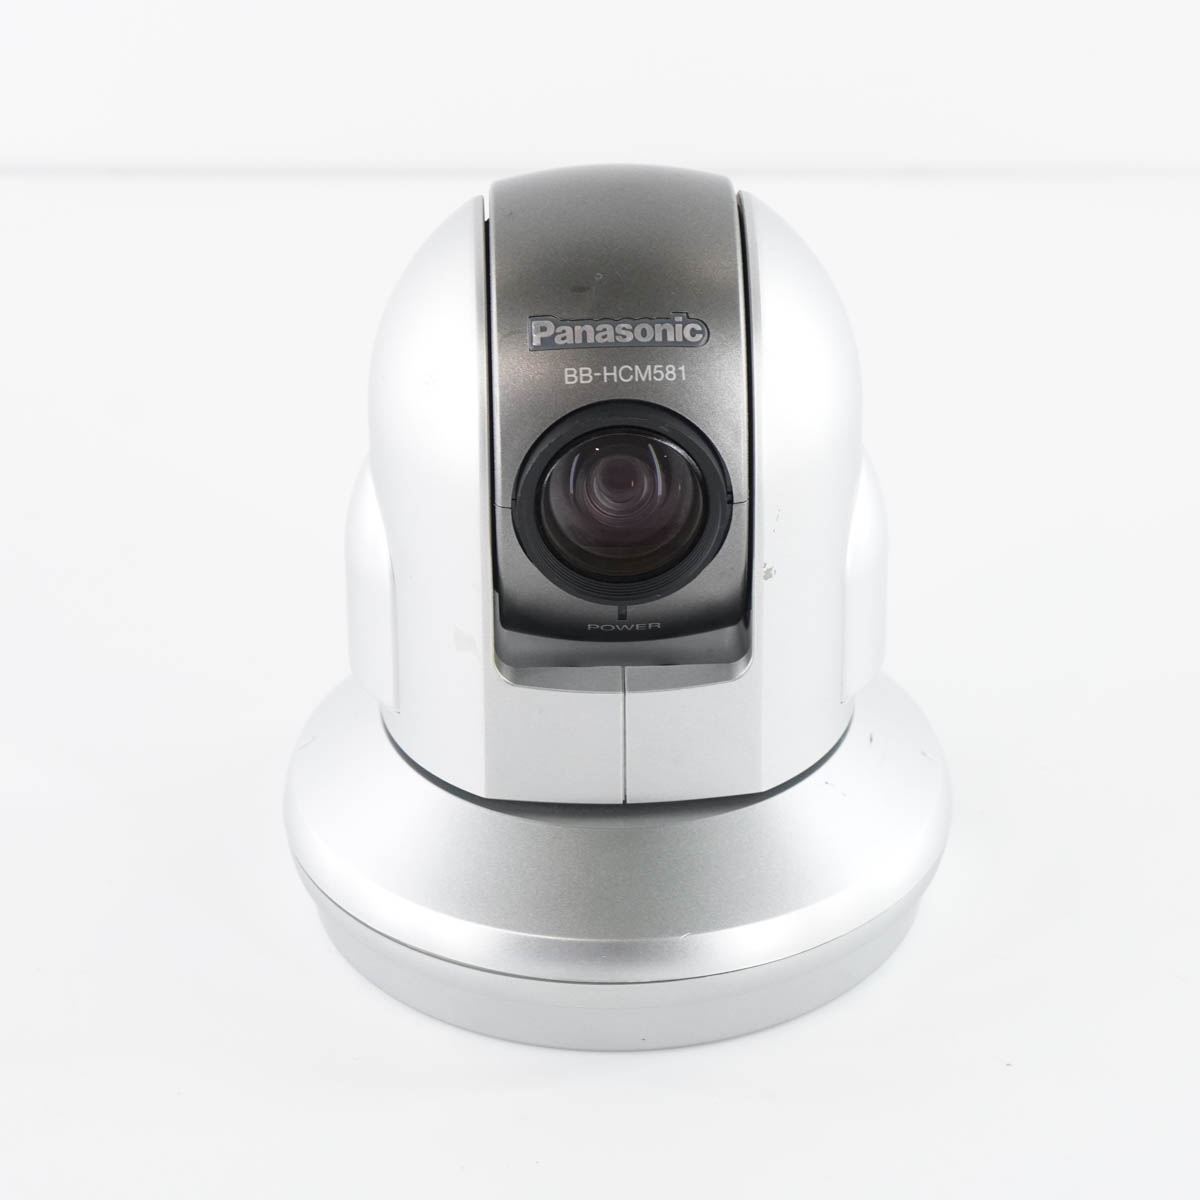 Panasonic BB-HCM581 ネットワークカメラ - 防犯カメラ